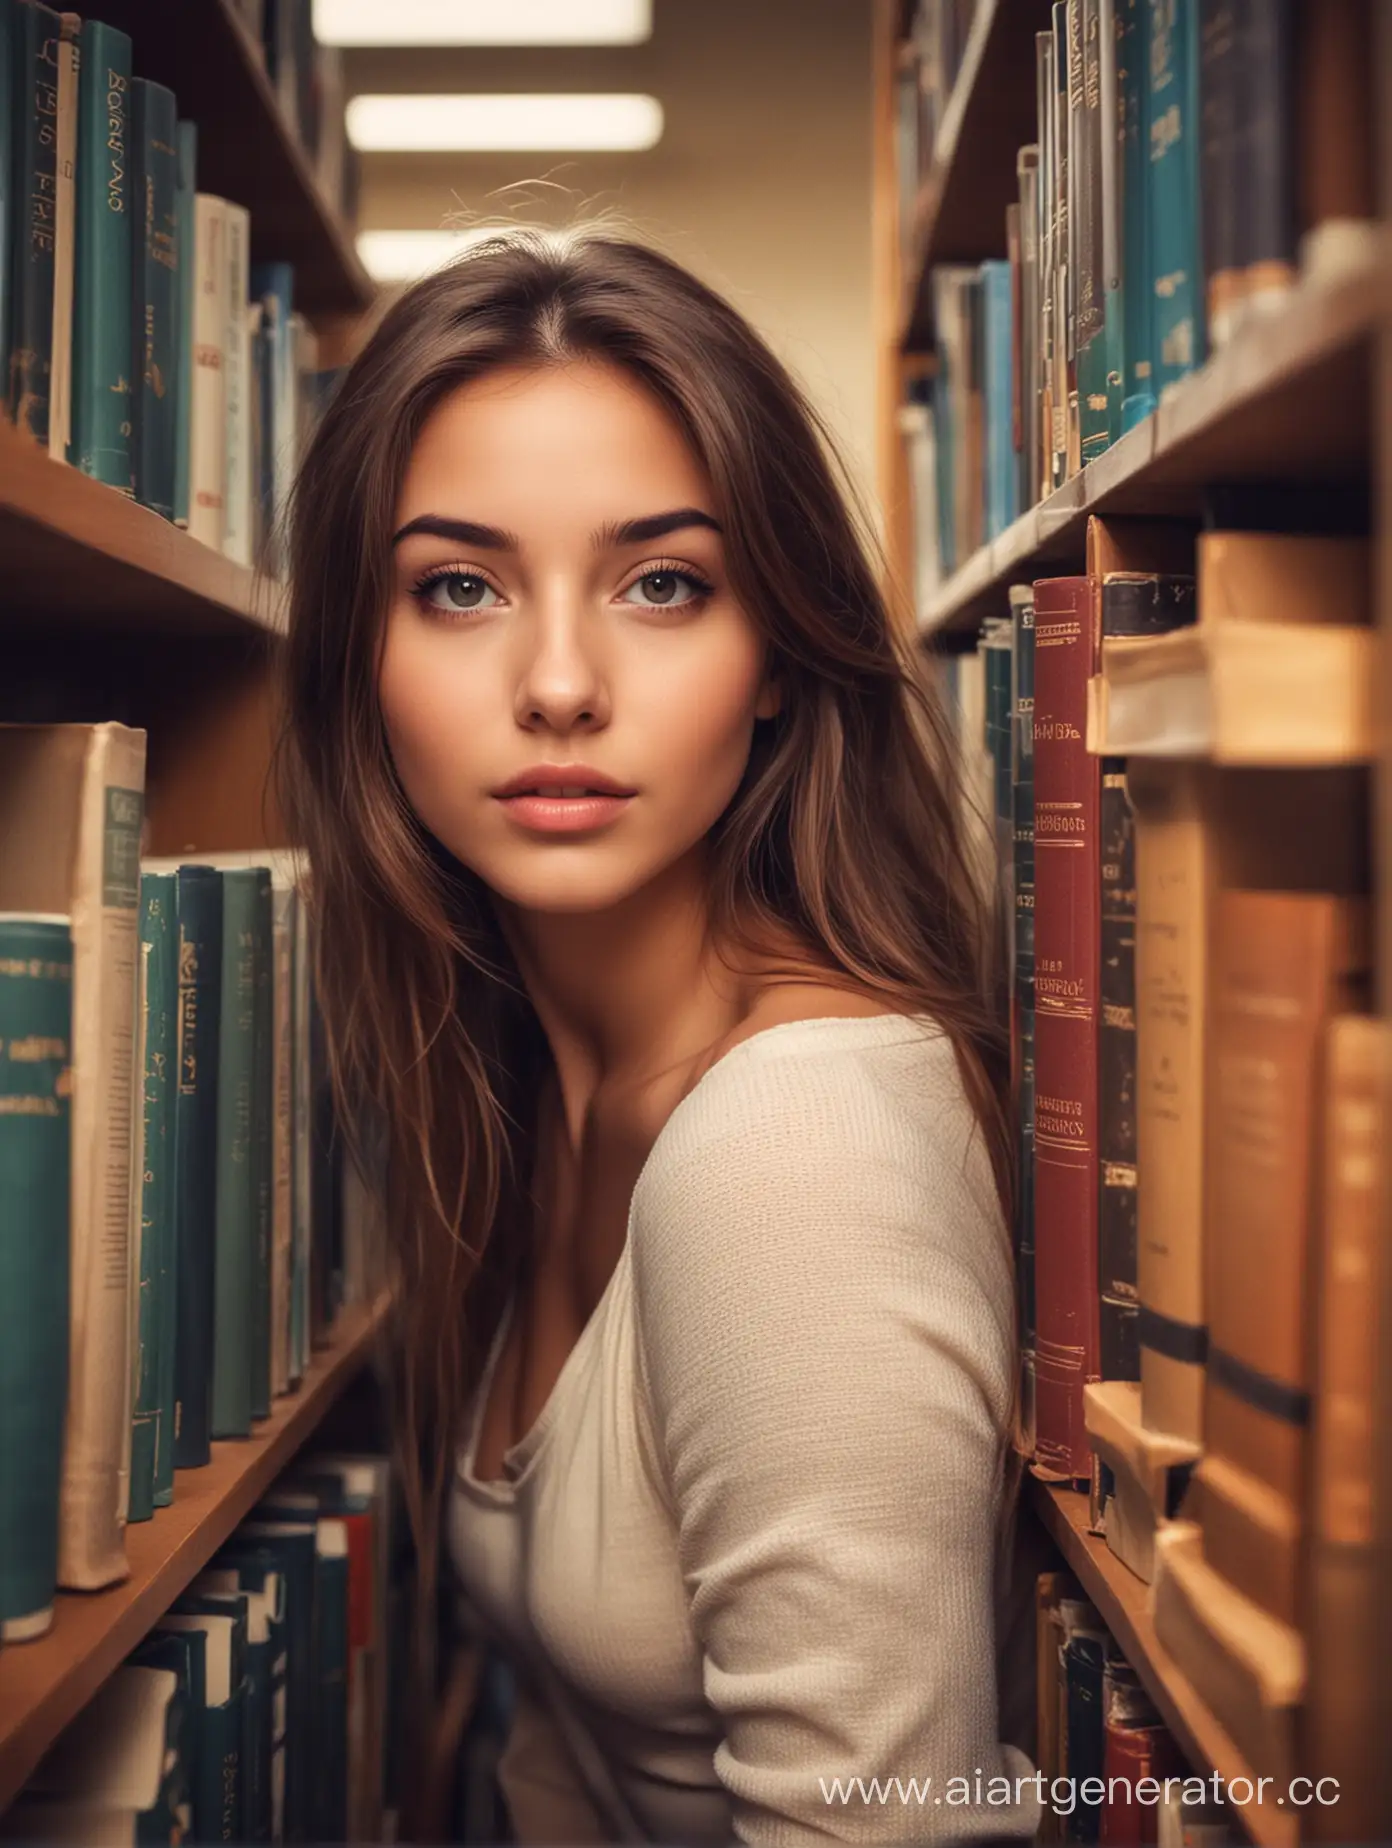 Красивая девушка в библиотеке, смотрит через книги